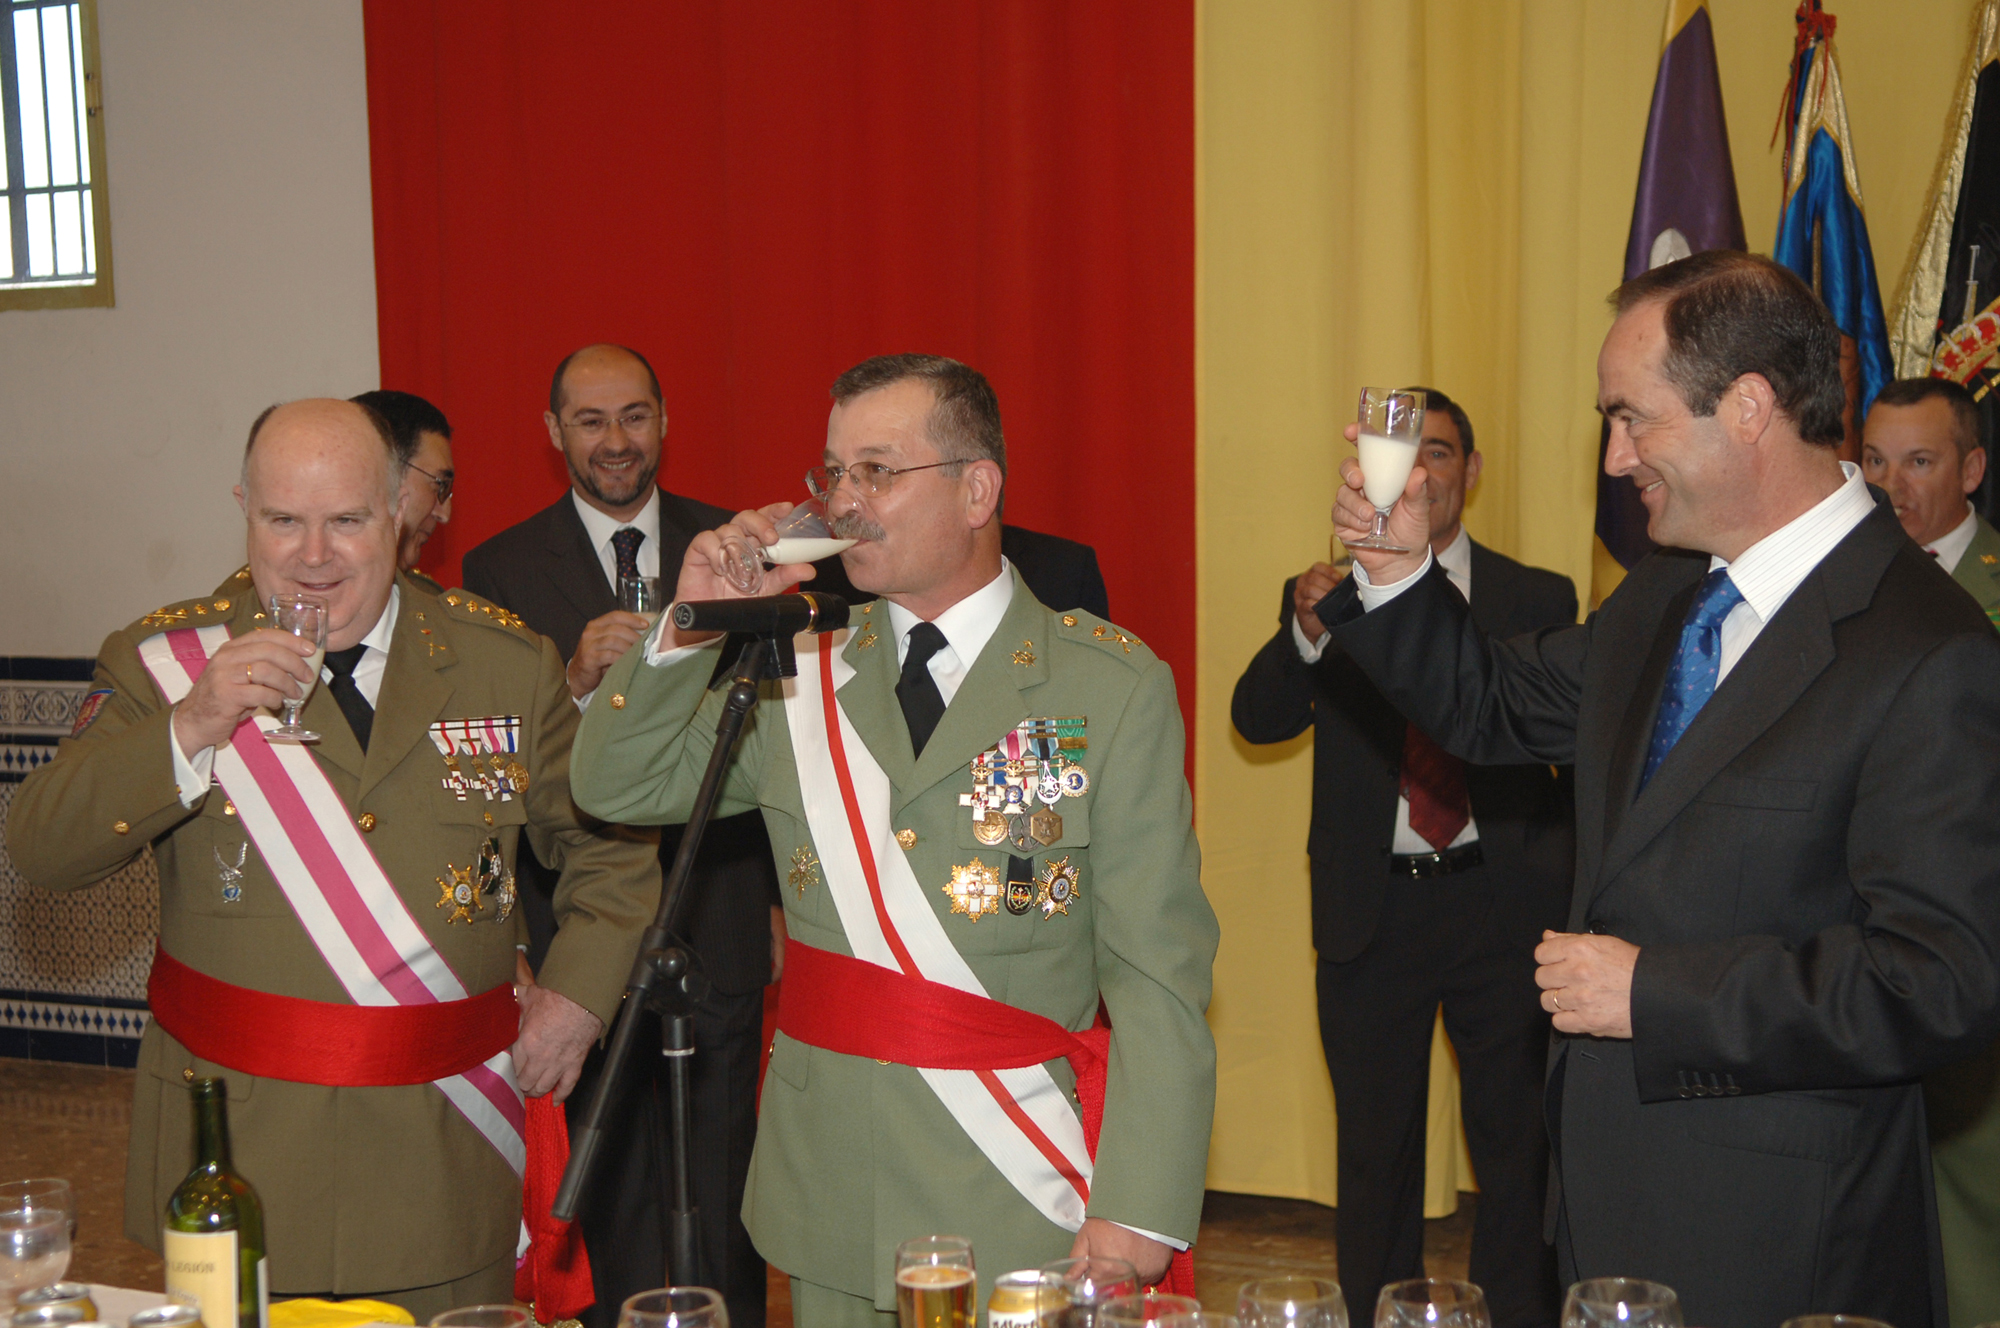 Tradicional brindis legionario con 'leche pantera' - Ministerio Defensa de España